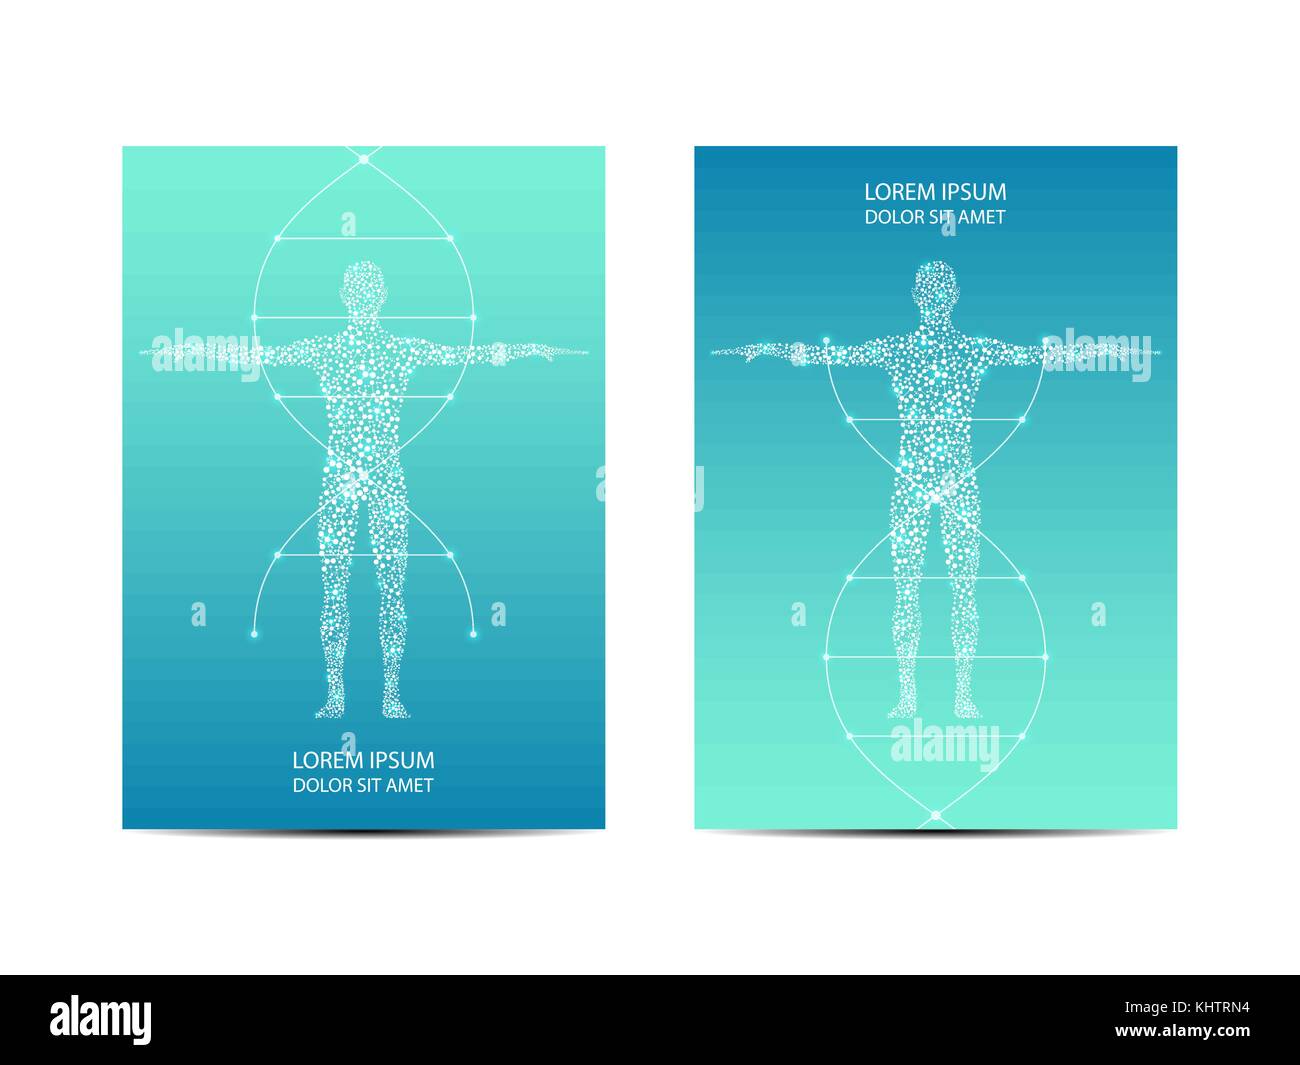 Abdeckung oder Plakatgestaltung mit menschlichen Körper, wissenschaftliche und technologische Konzept, Vector Illustration. Stock Vektor